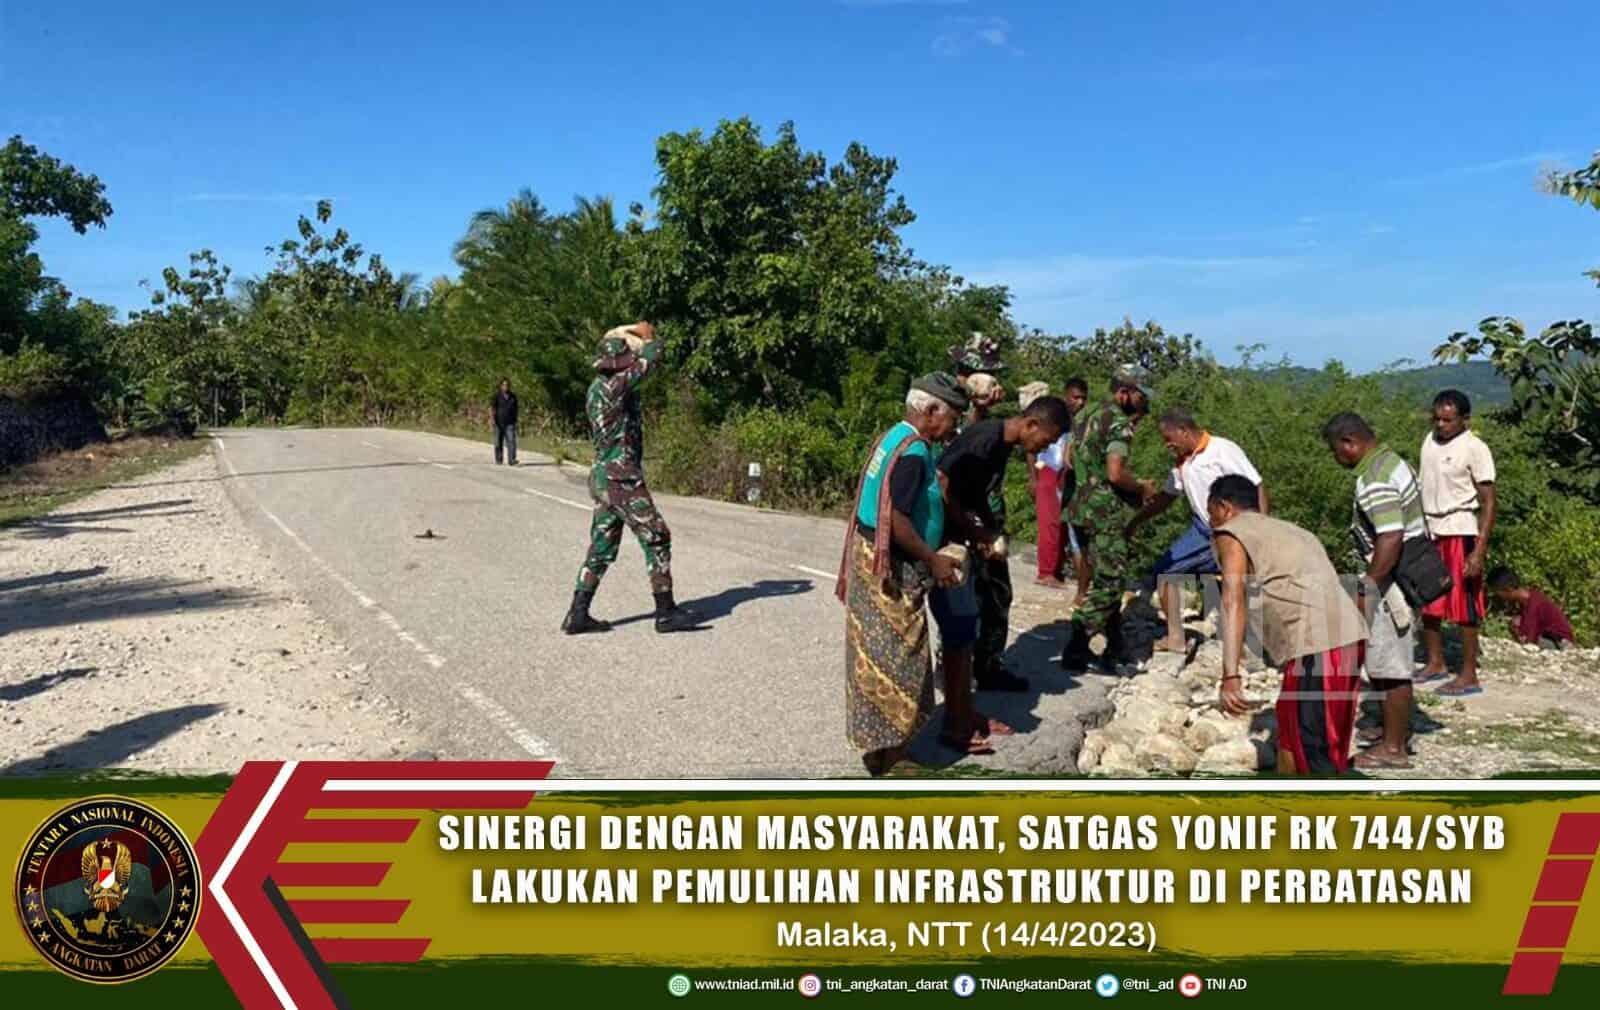 Sinergi Dengan Masyarakat, Satgas Yonif RK 744/SYB Lakukan Pemulihan Infrastruktur di Perbatasan